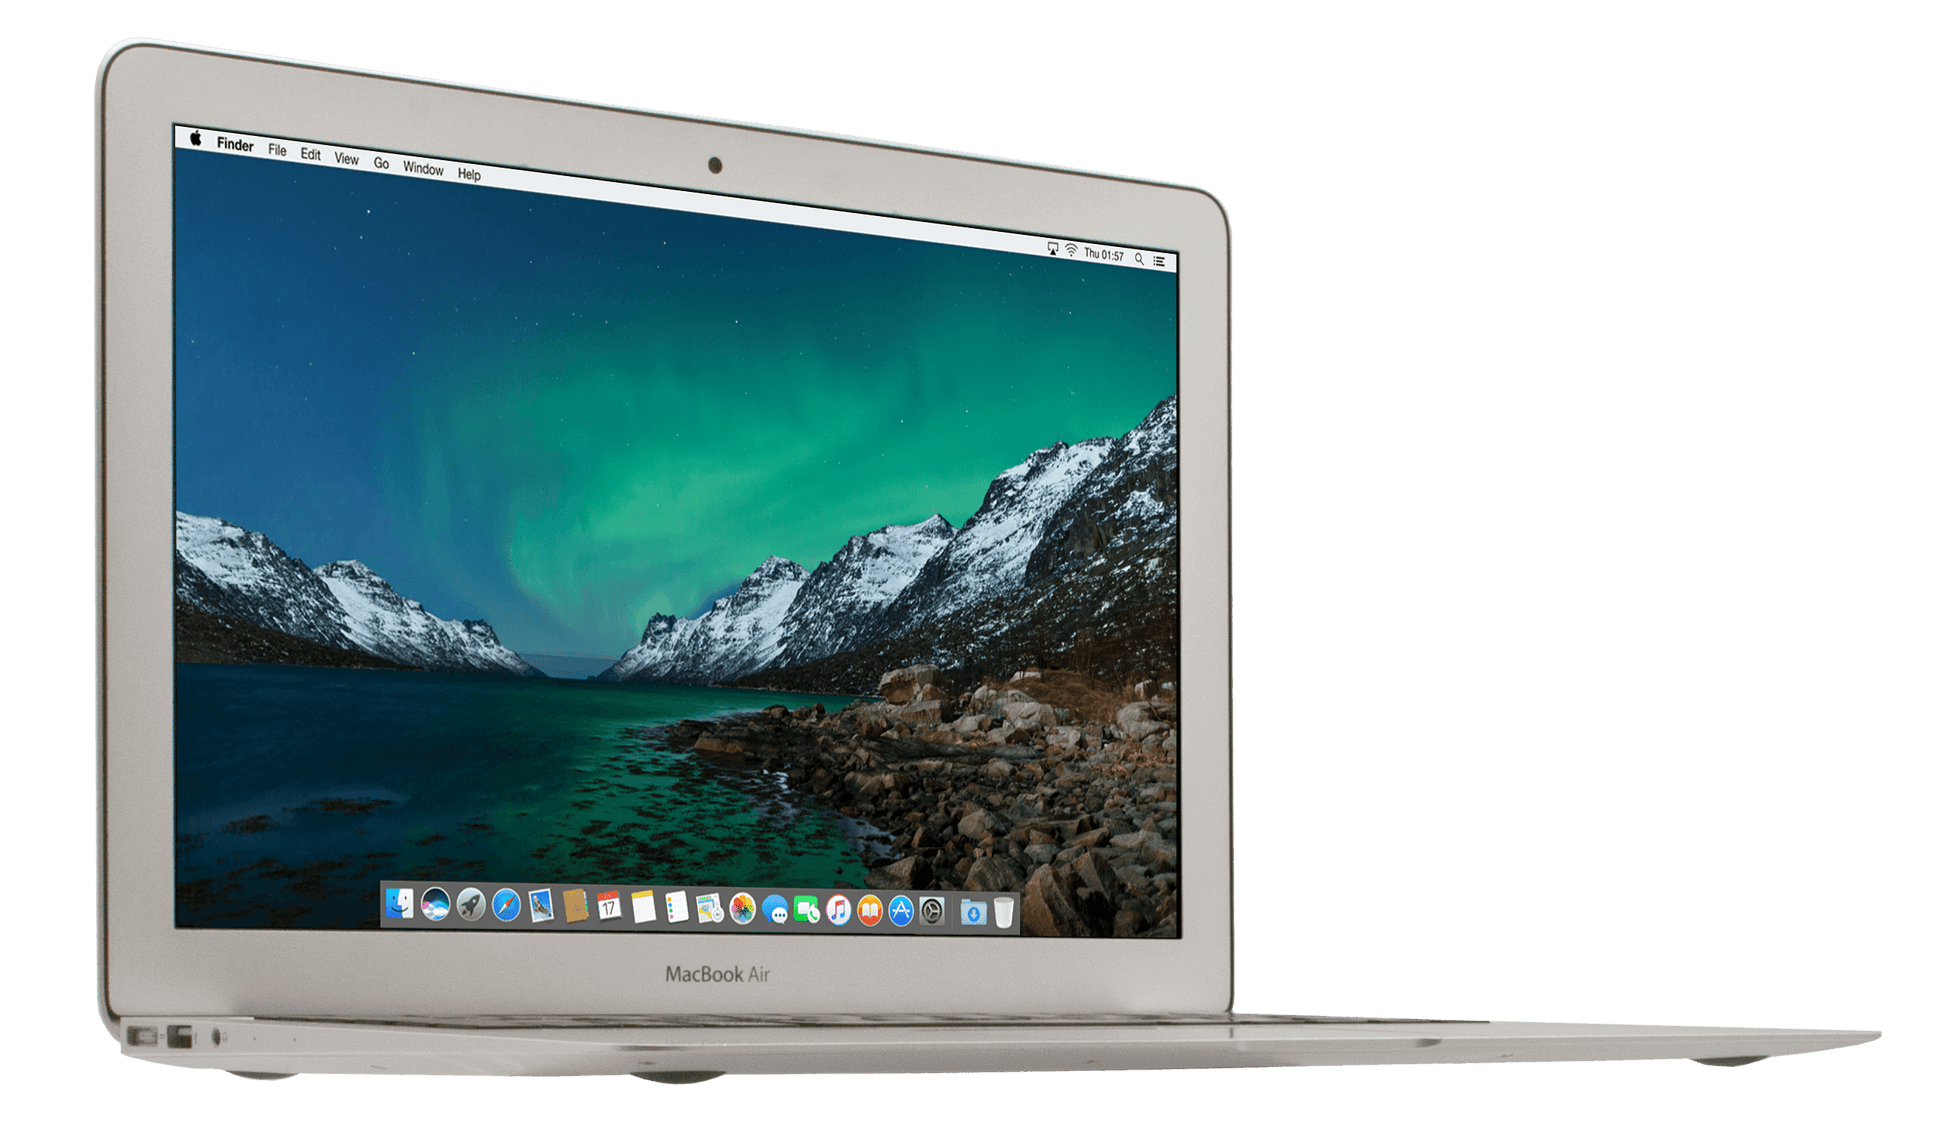 Concurreren Grens taal Refurbished MacBook Air 13 inch Dual Core i5 1.8 kopen? | 2 jaar garantie |  leapp - leapp | Refurbished MacBook, iPhone, iPad & iMacs